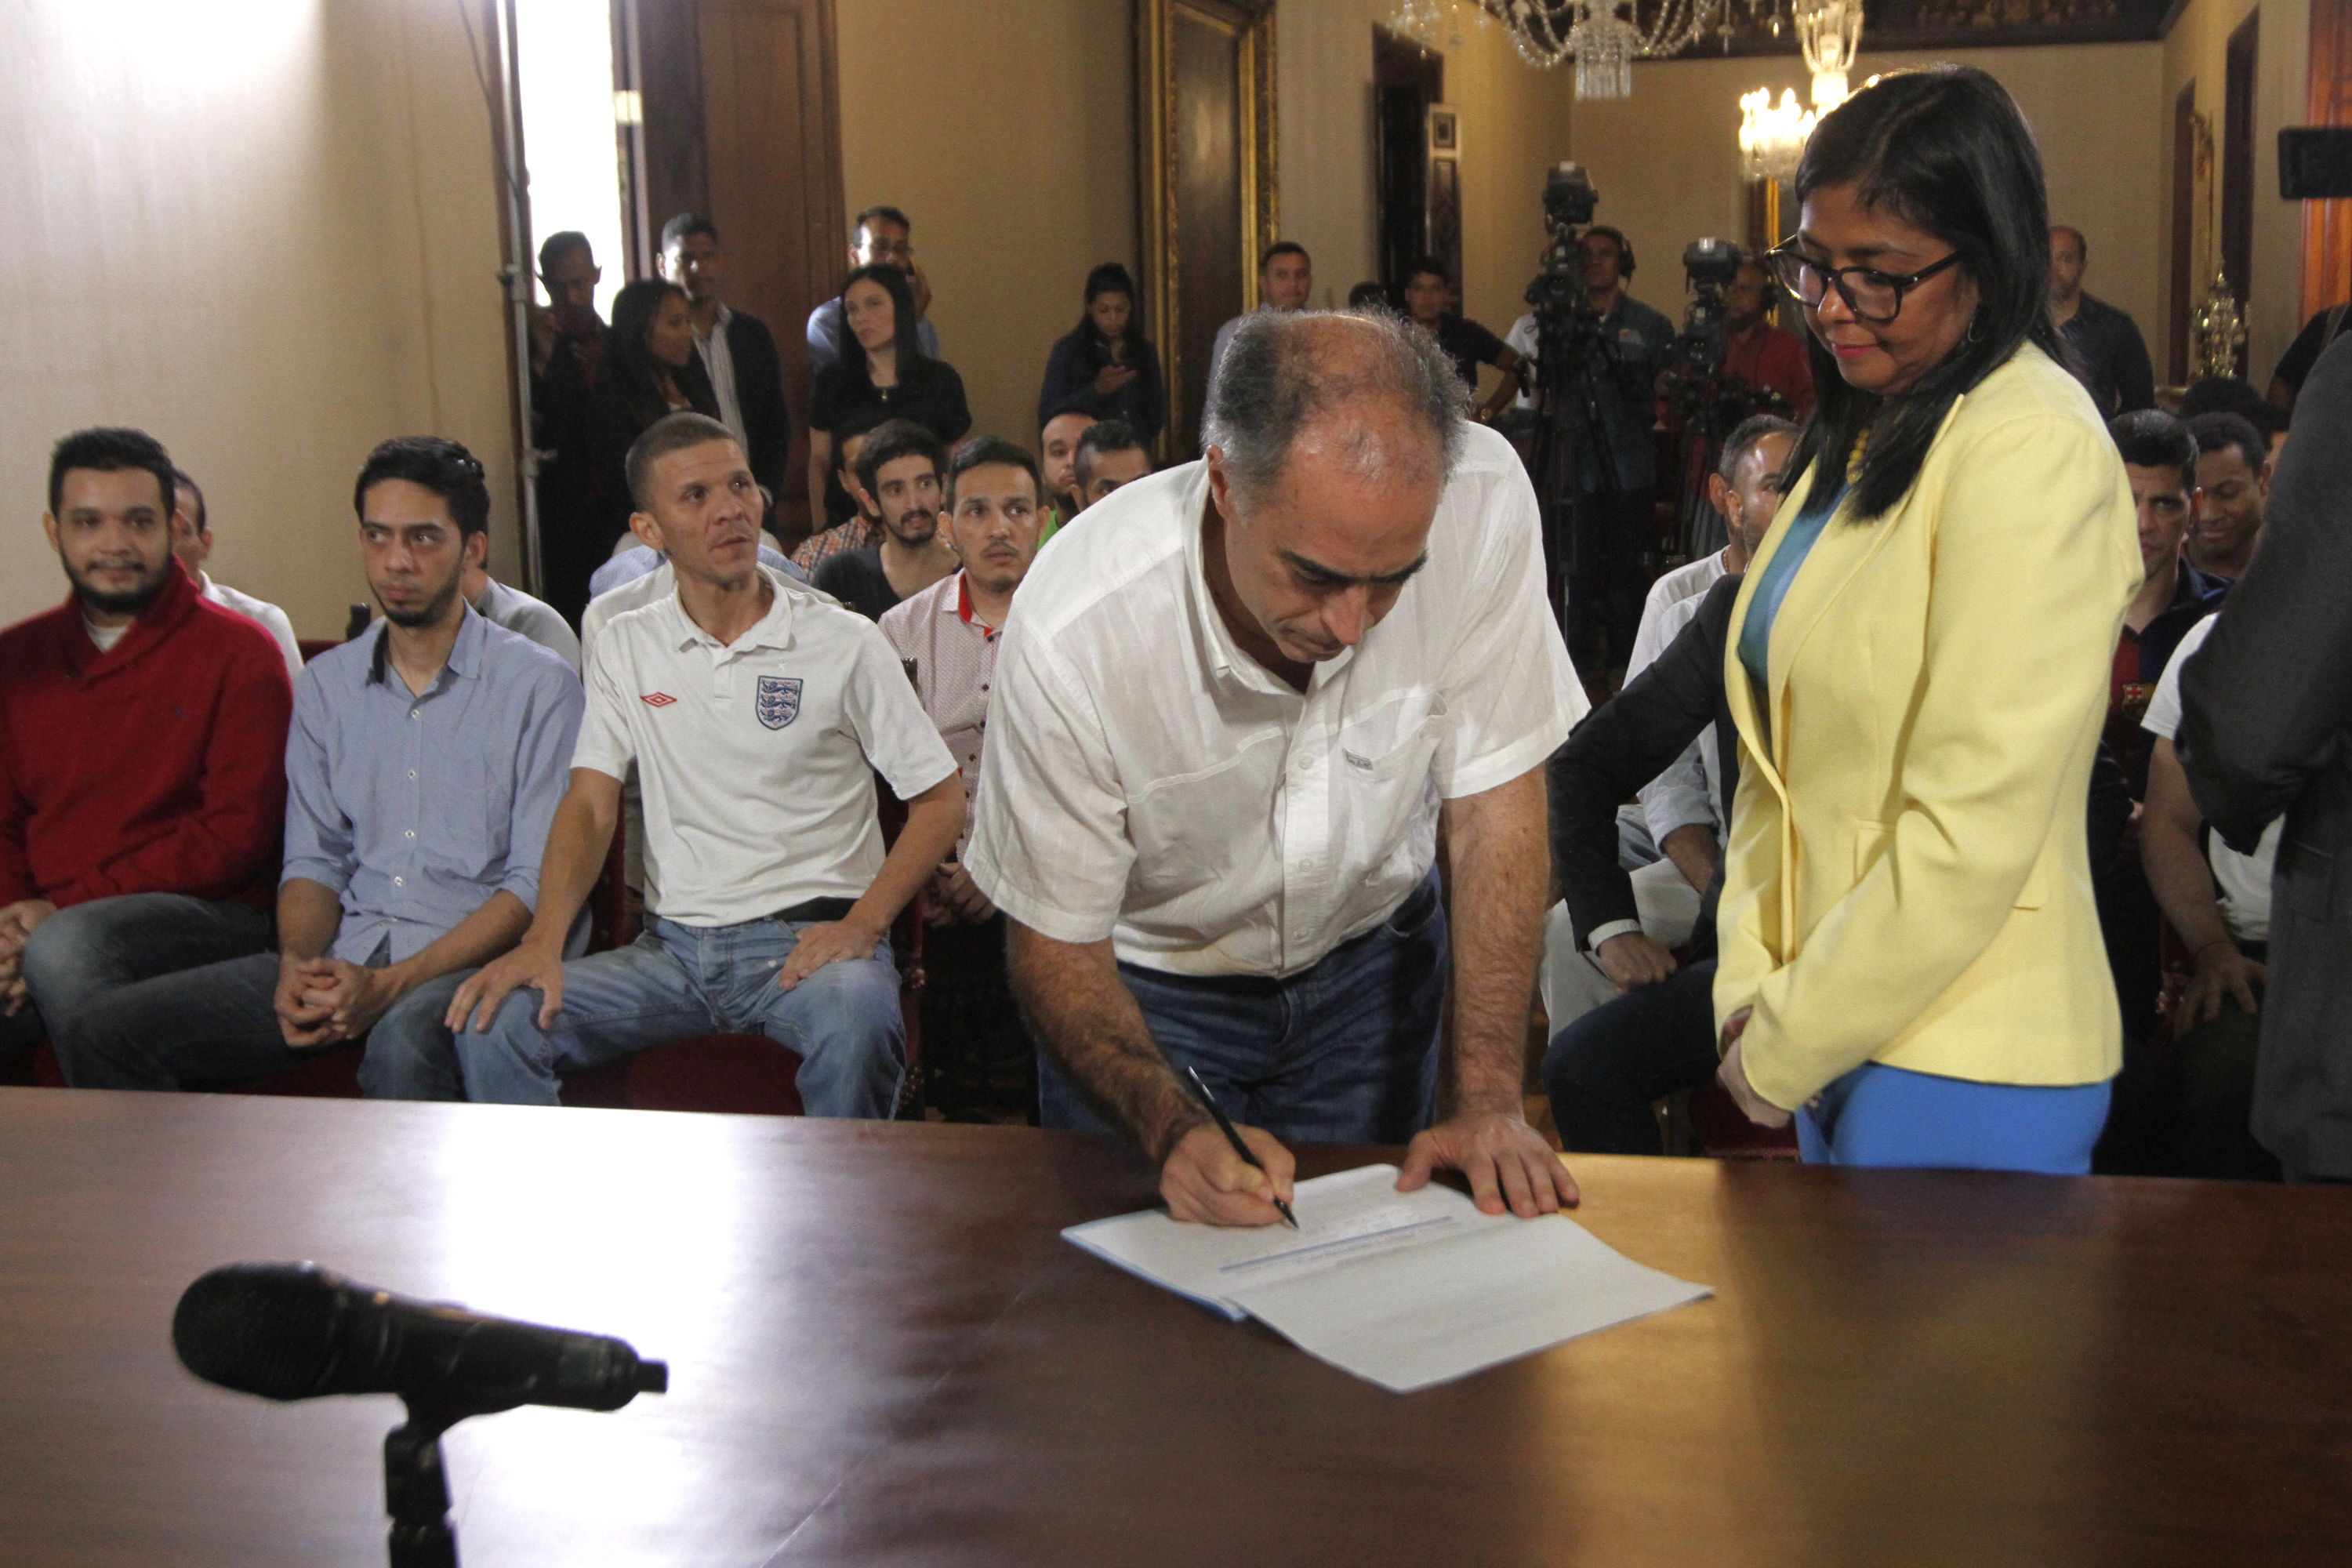 Presos políticos debieron firmar documento para ser excarcelados (Fotos)